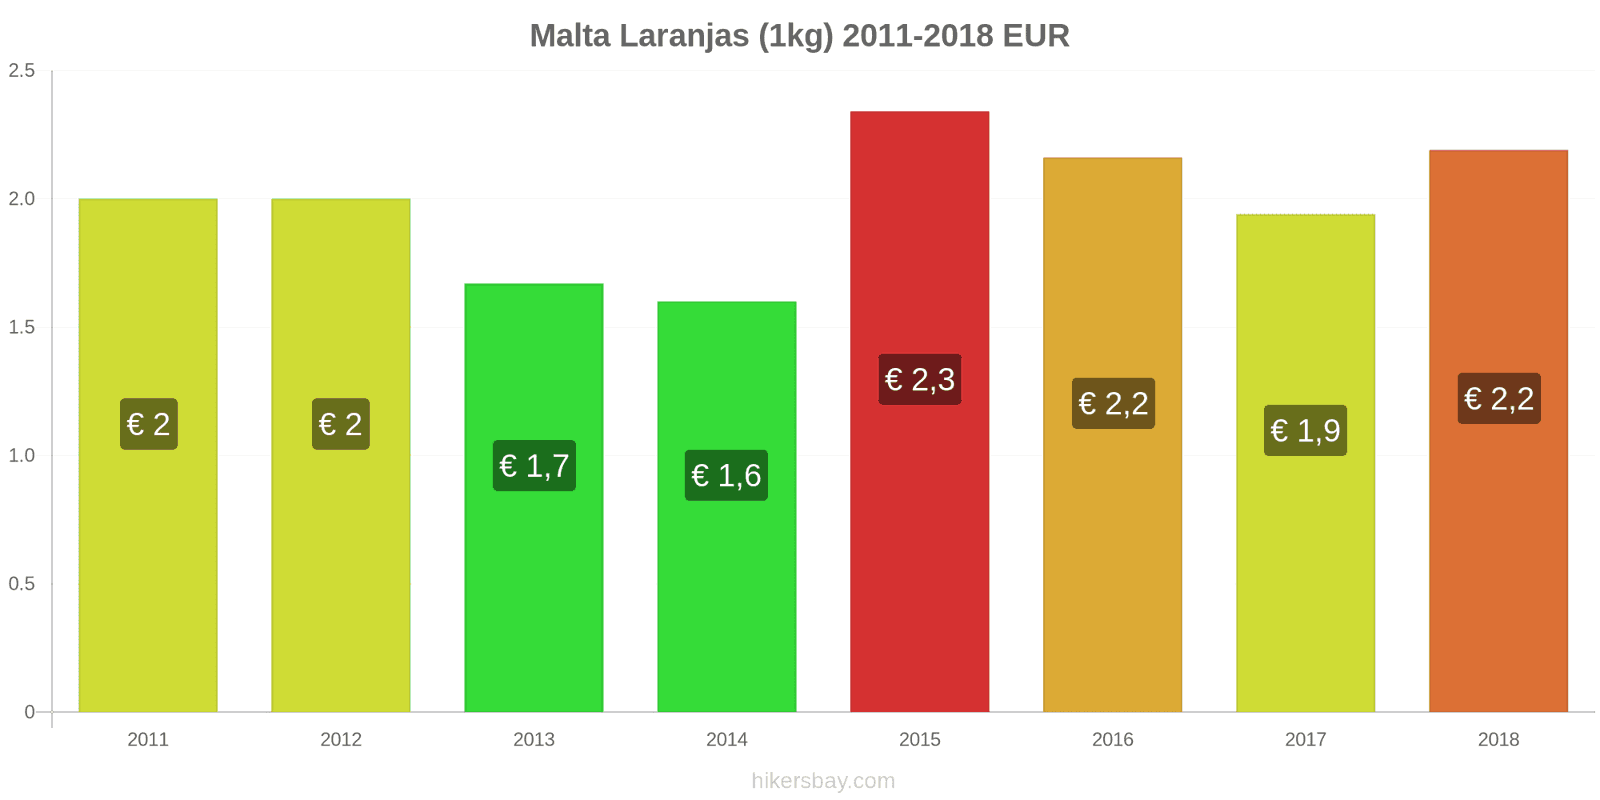 Malta mudanças de preços Laranjas (1kg) hikersbay.com